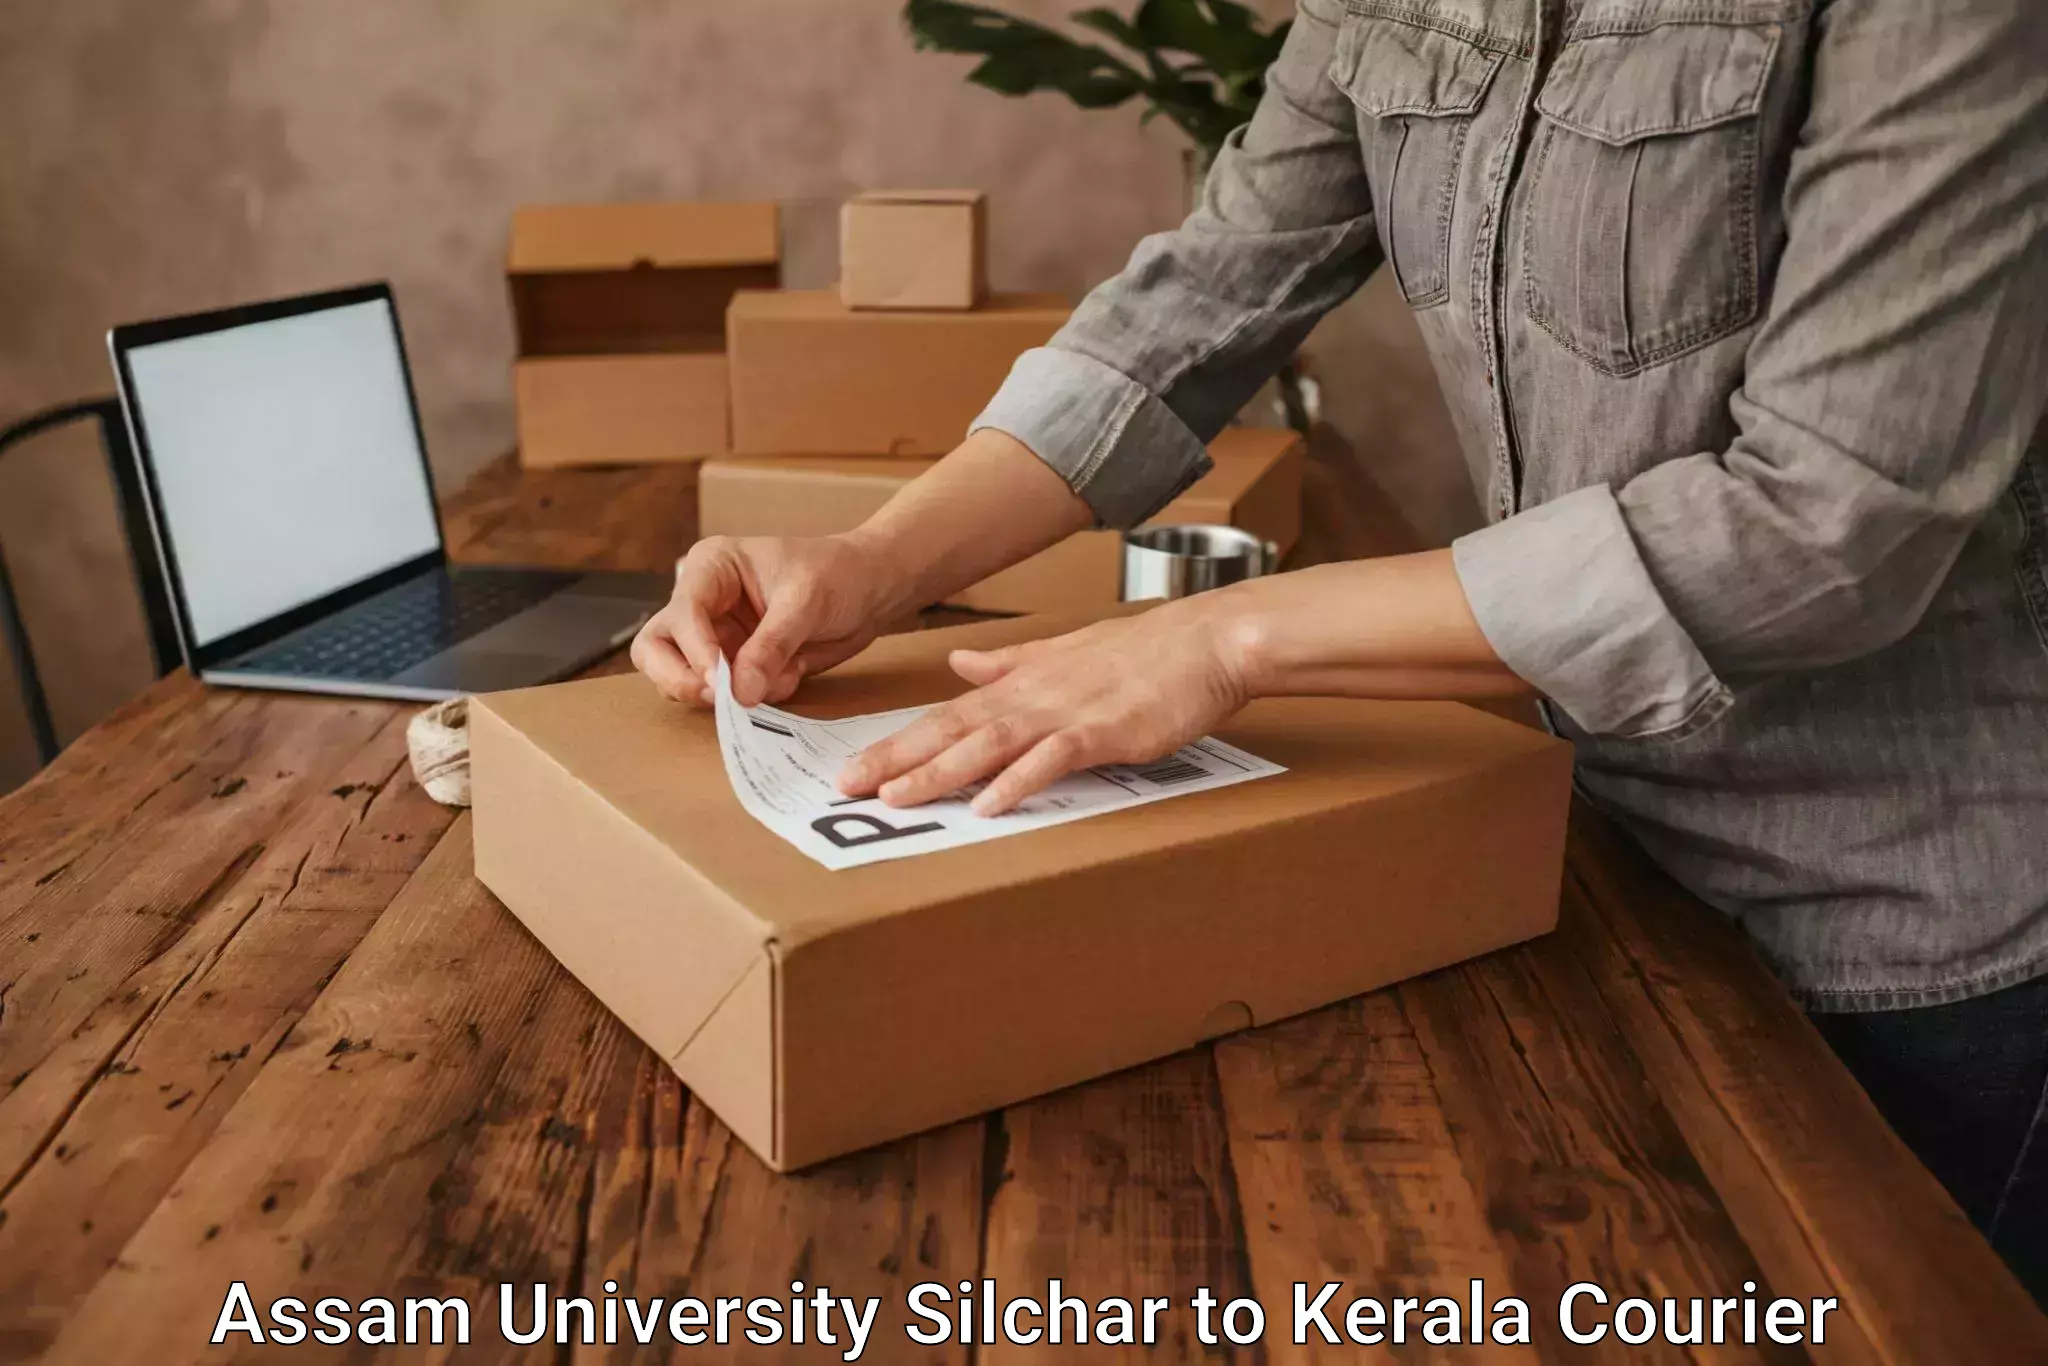 Cash on delivery service Assam University Silchar to Adimali